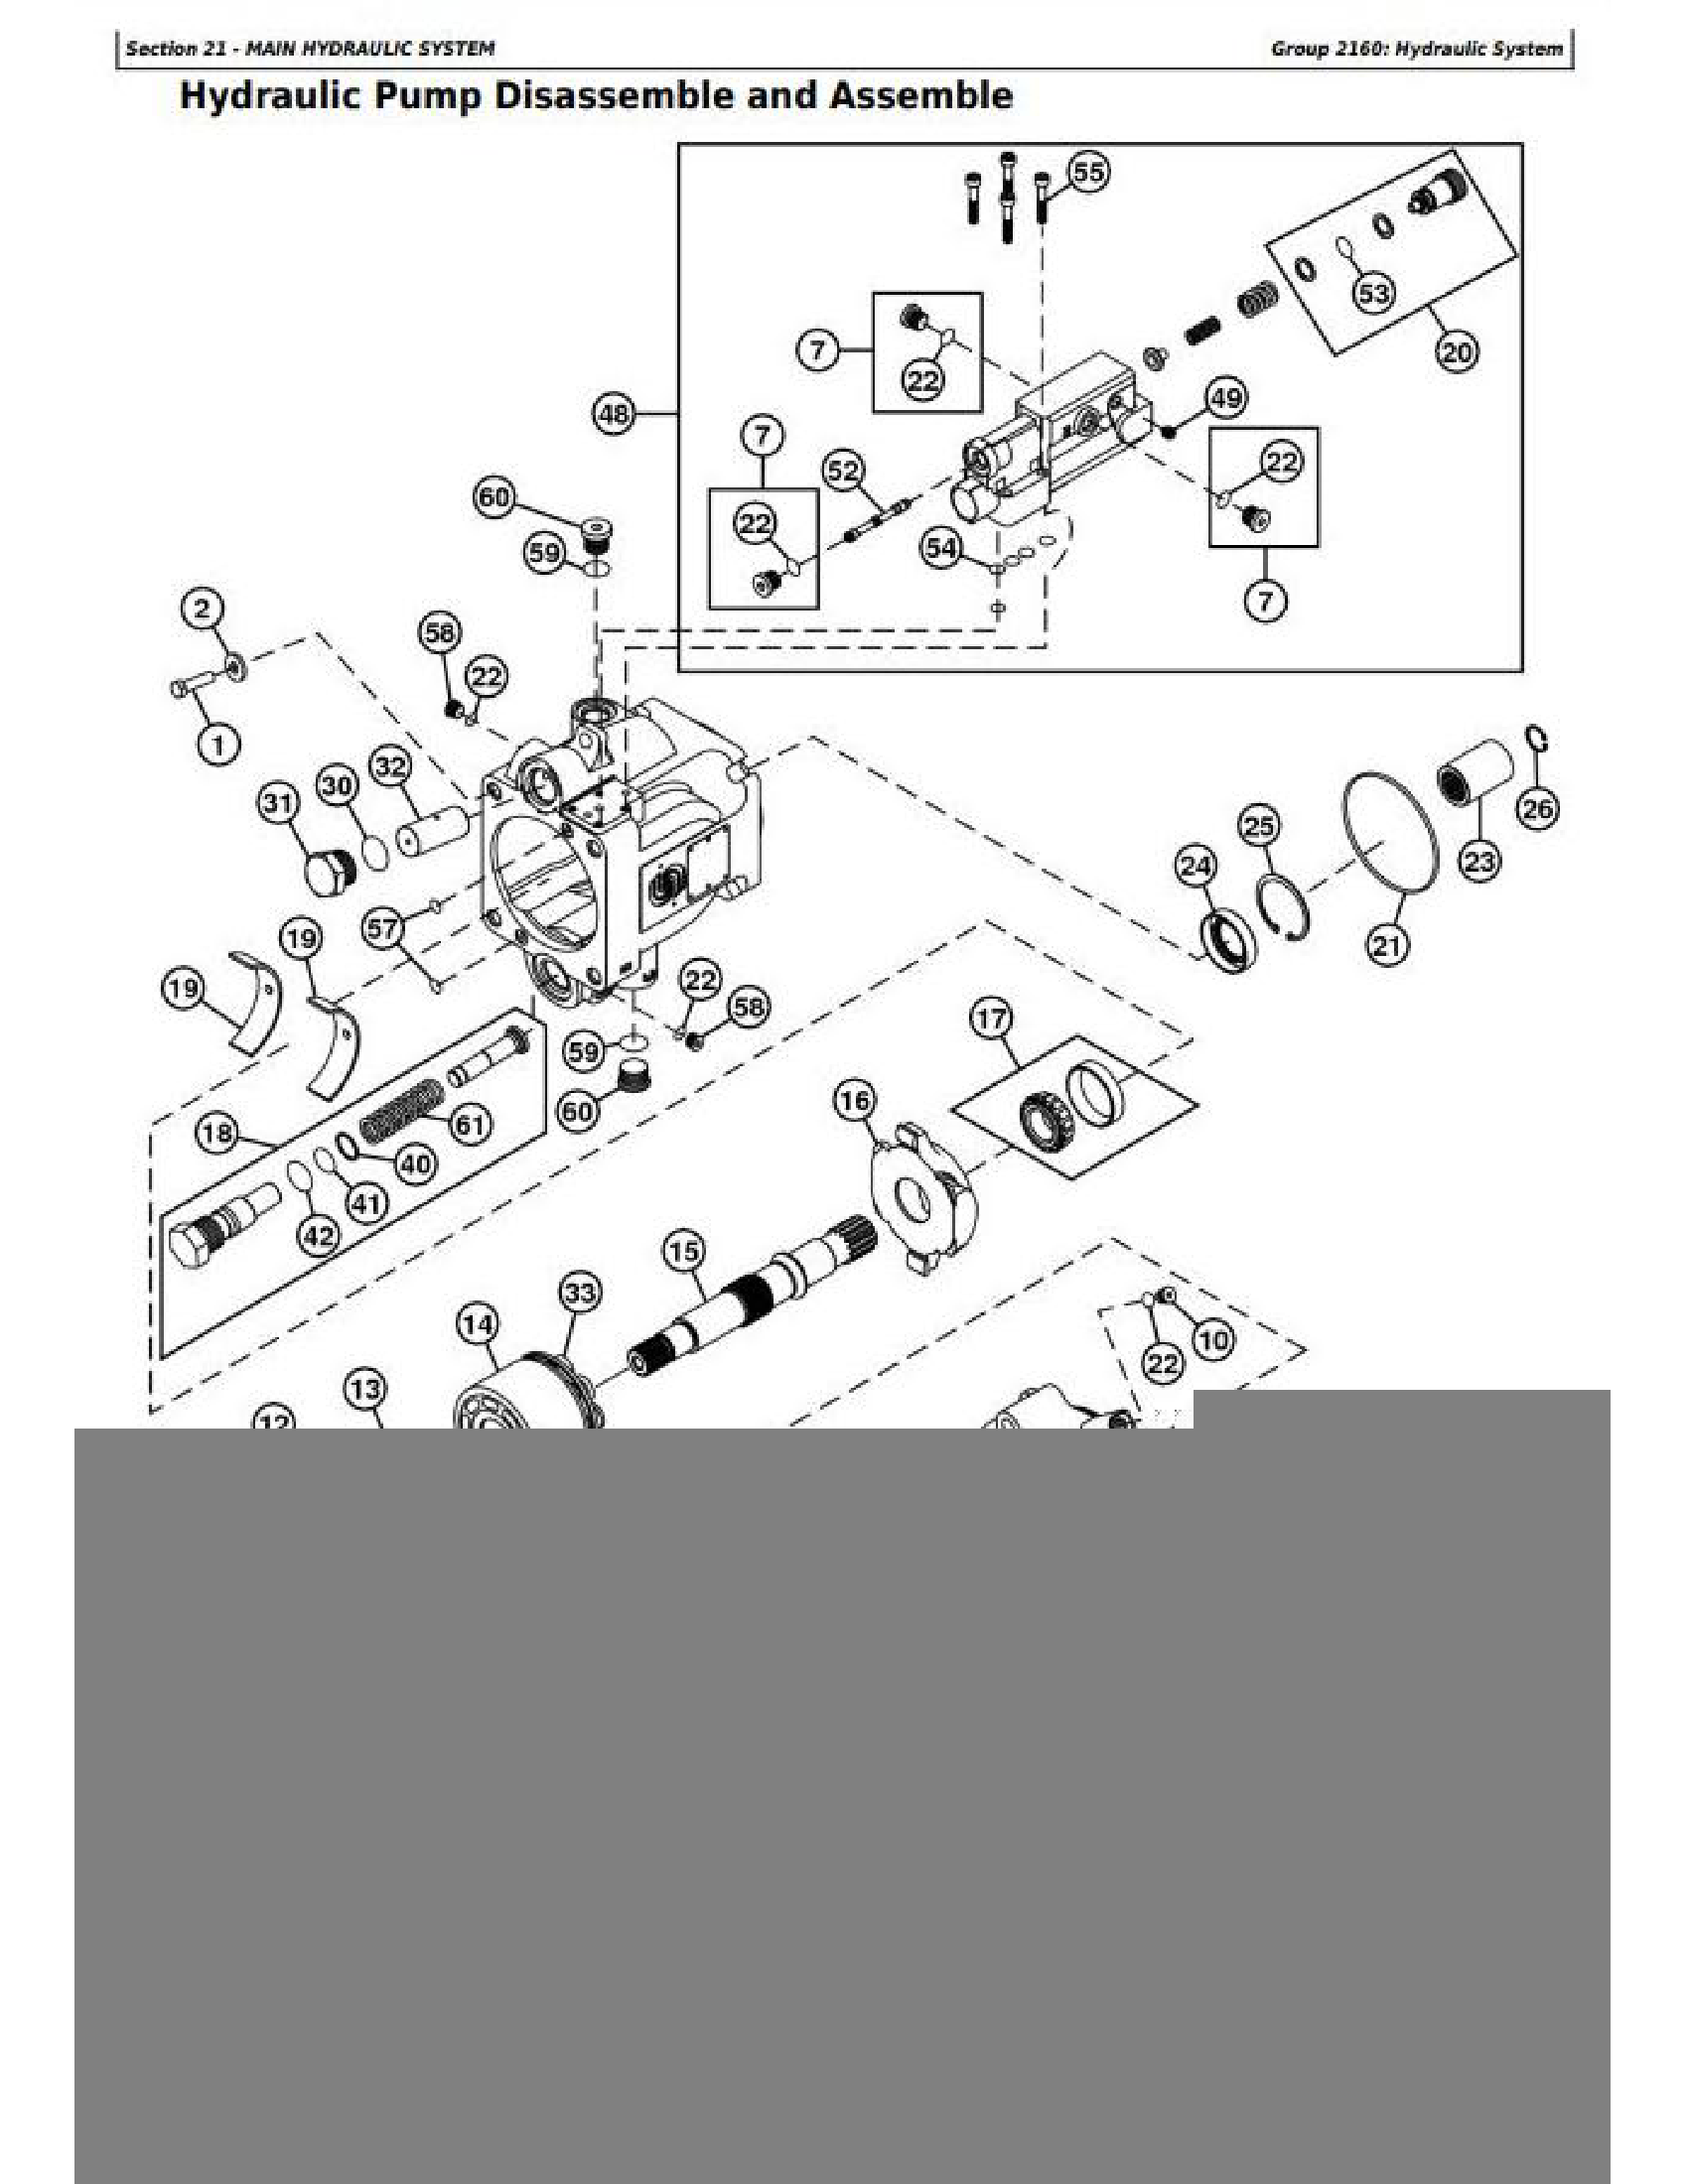 John Deere 500R manual pdf